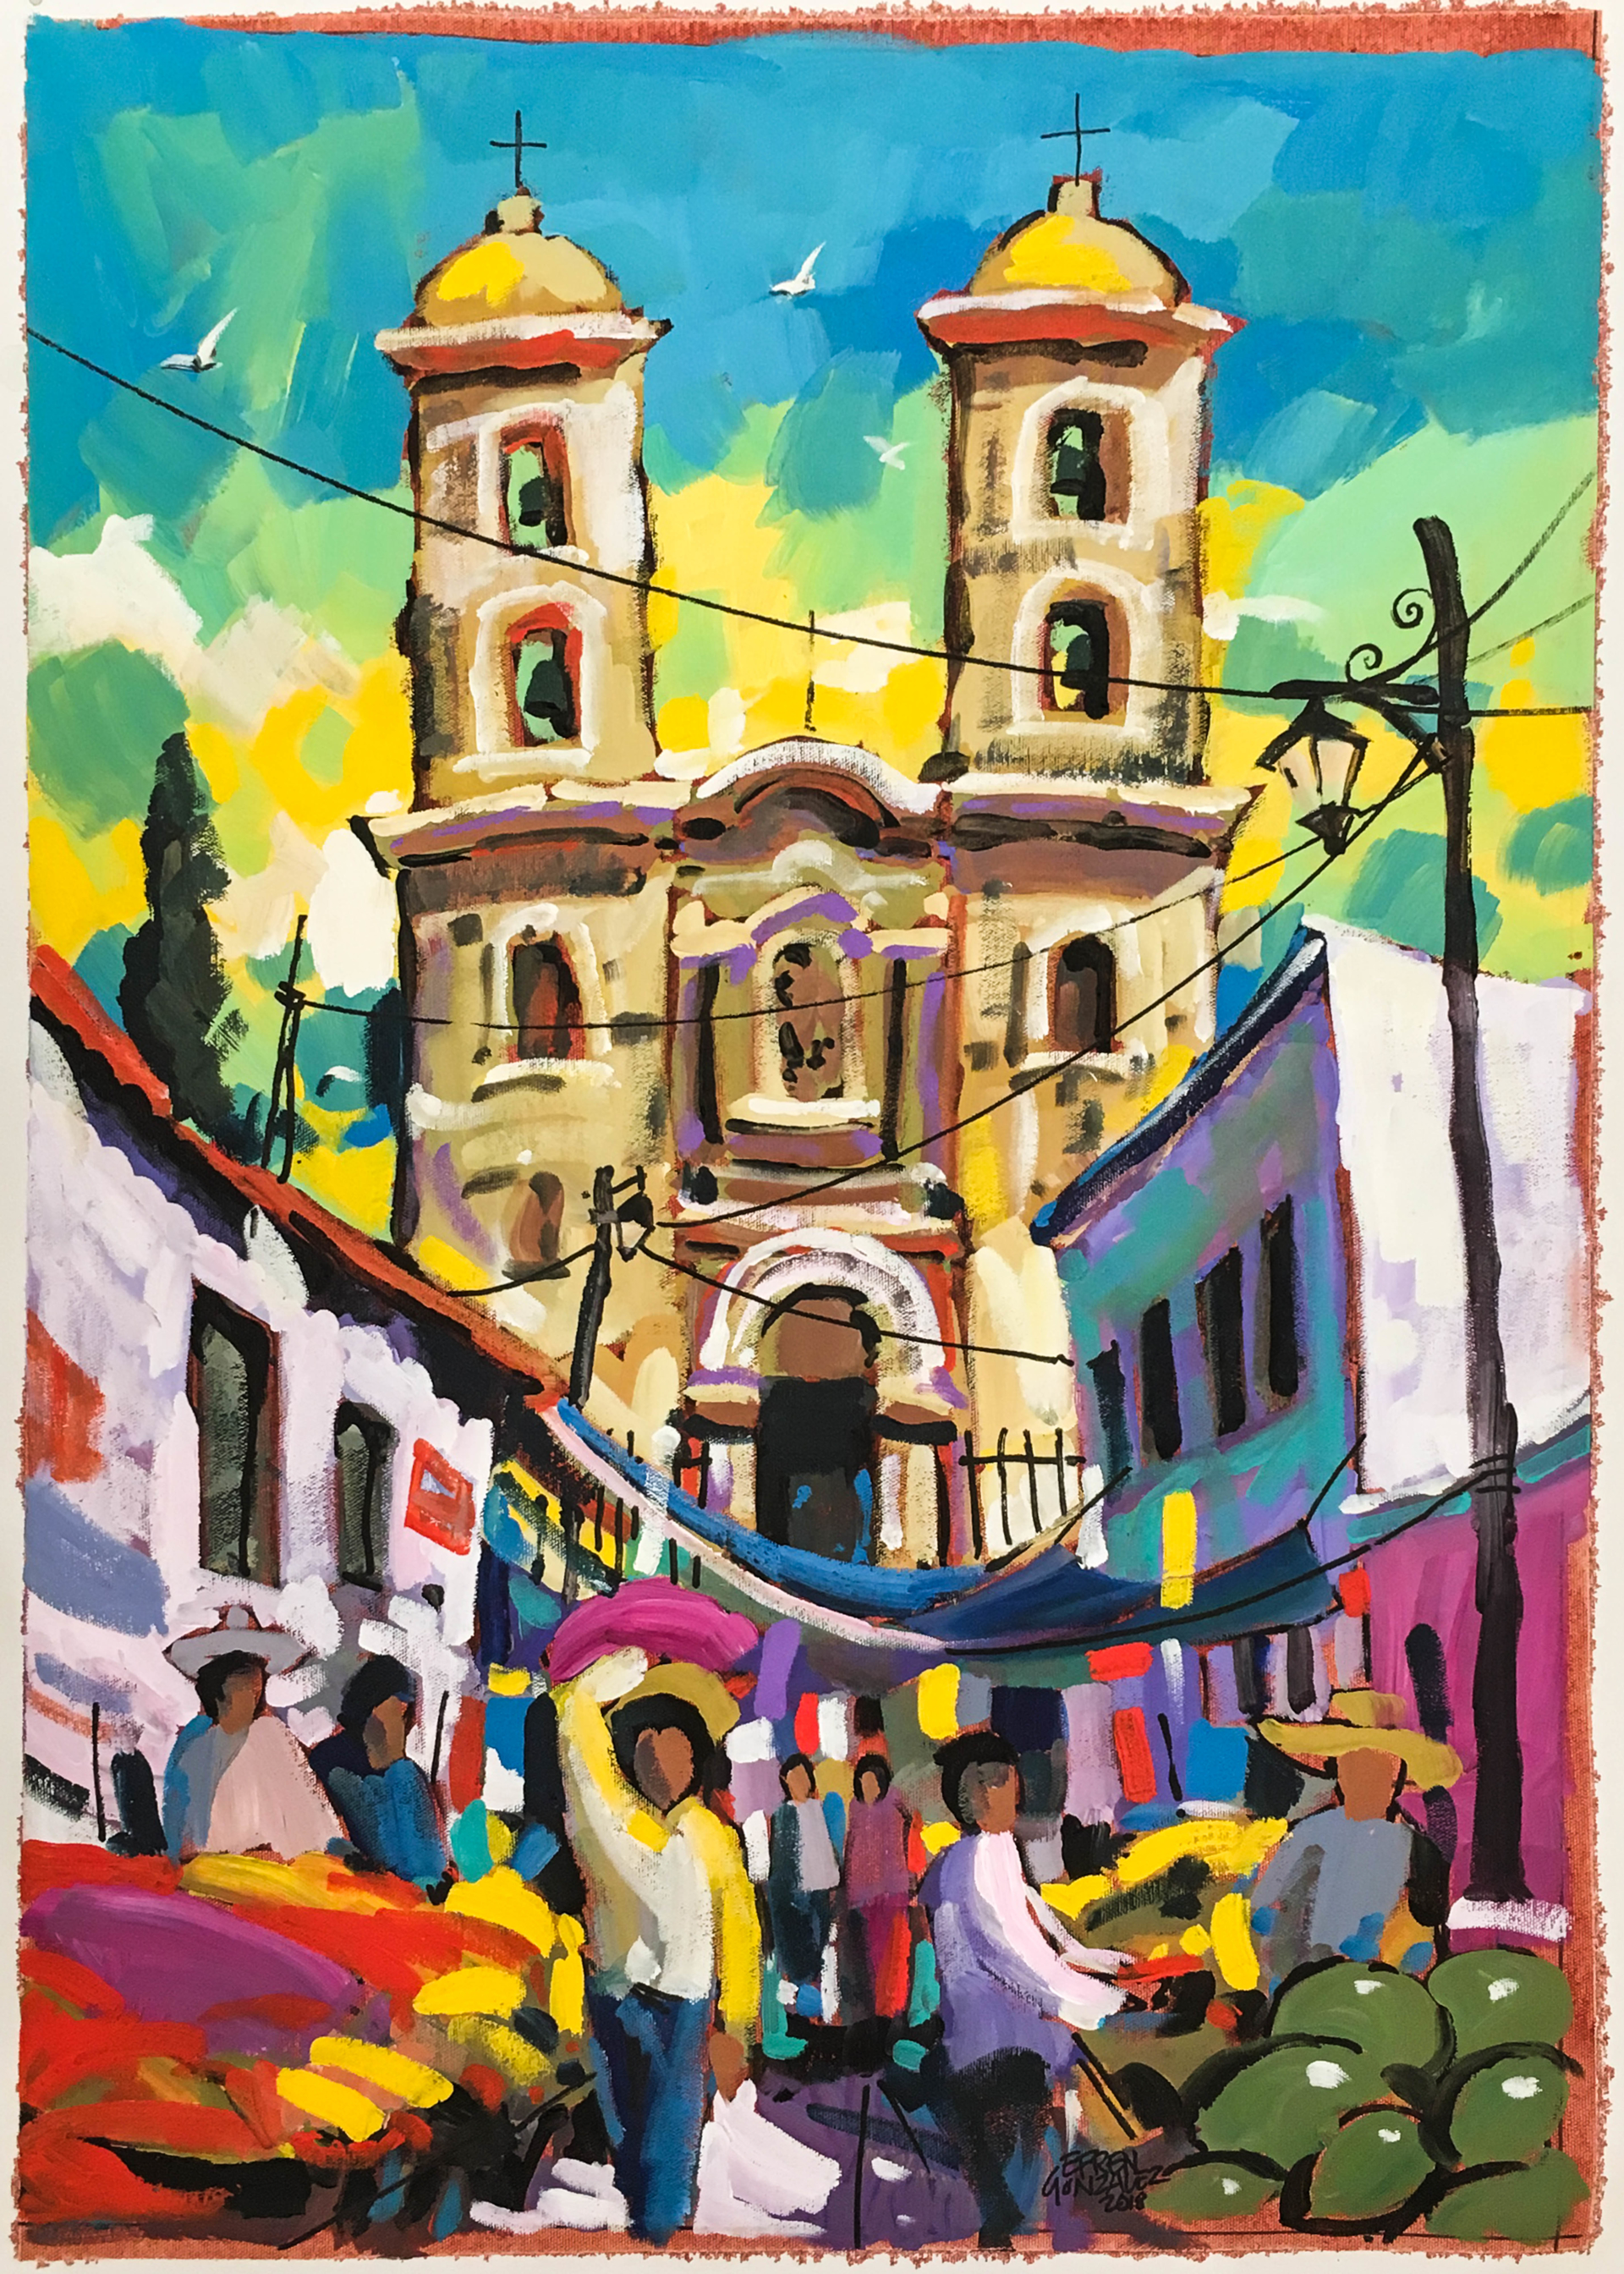 La Iglesia on Market Day by Efren Gonzalez